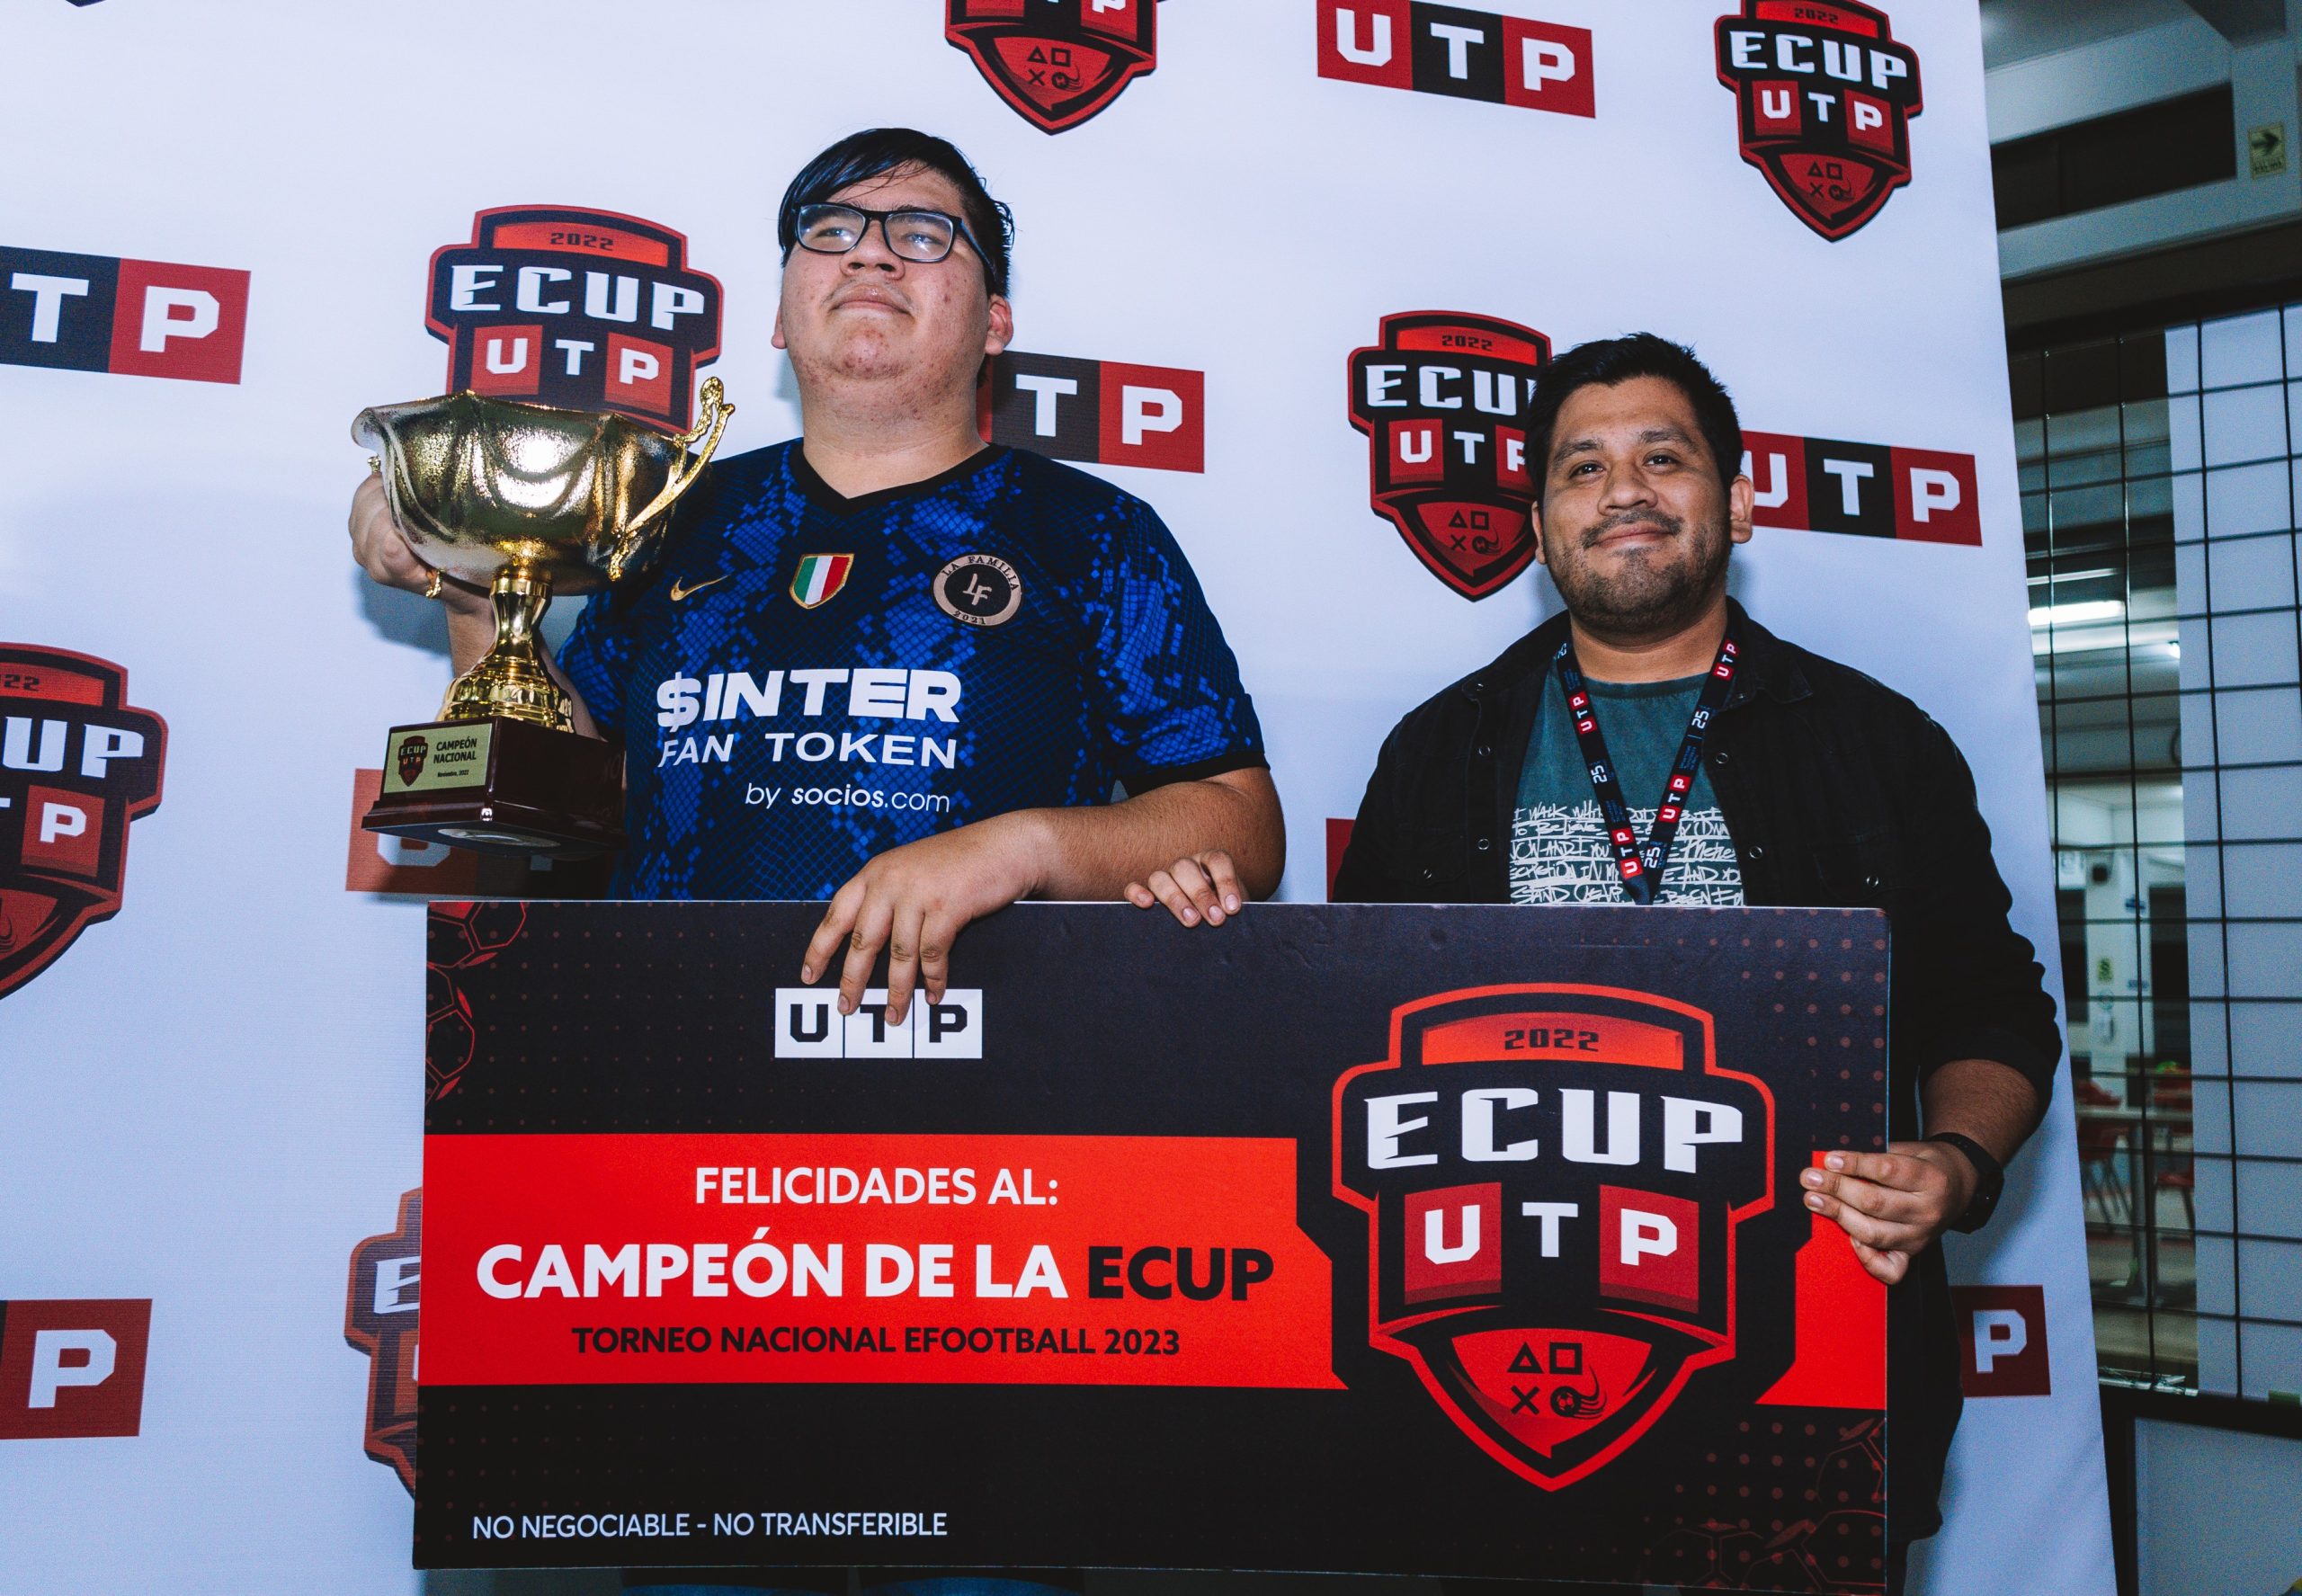 Foto de ECUP UTP: Conoce quiénes fueron los ganadores de este torneo de eFootball 2023